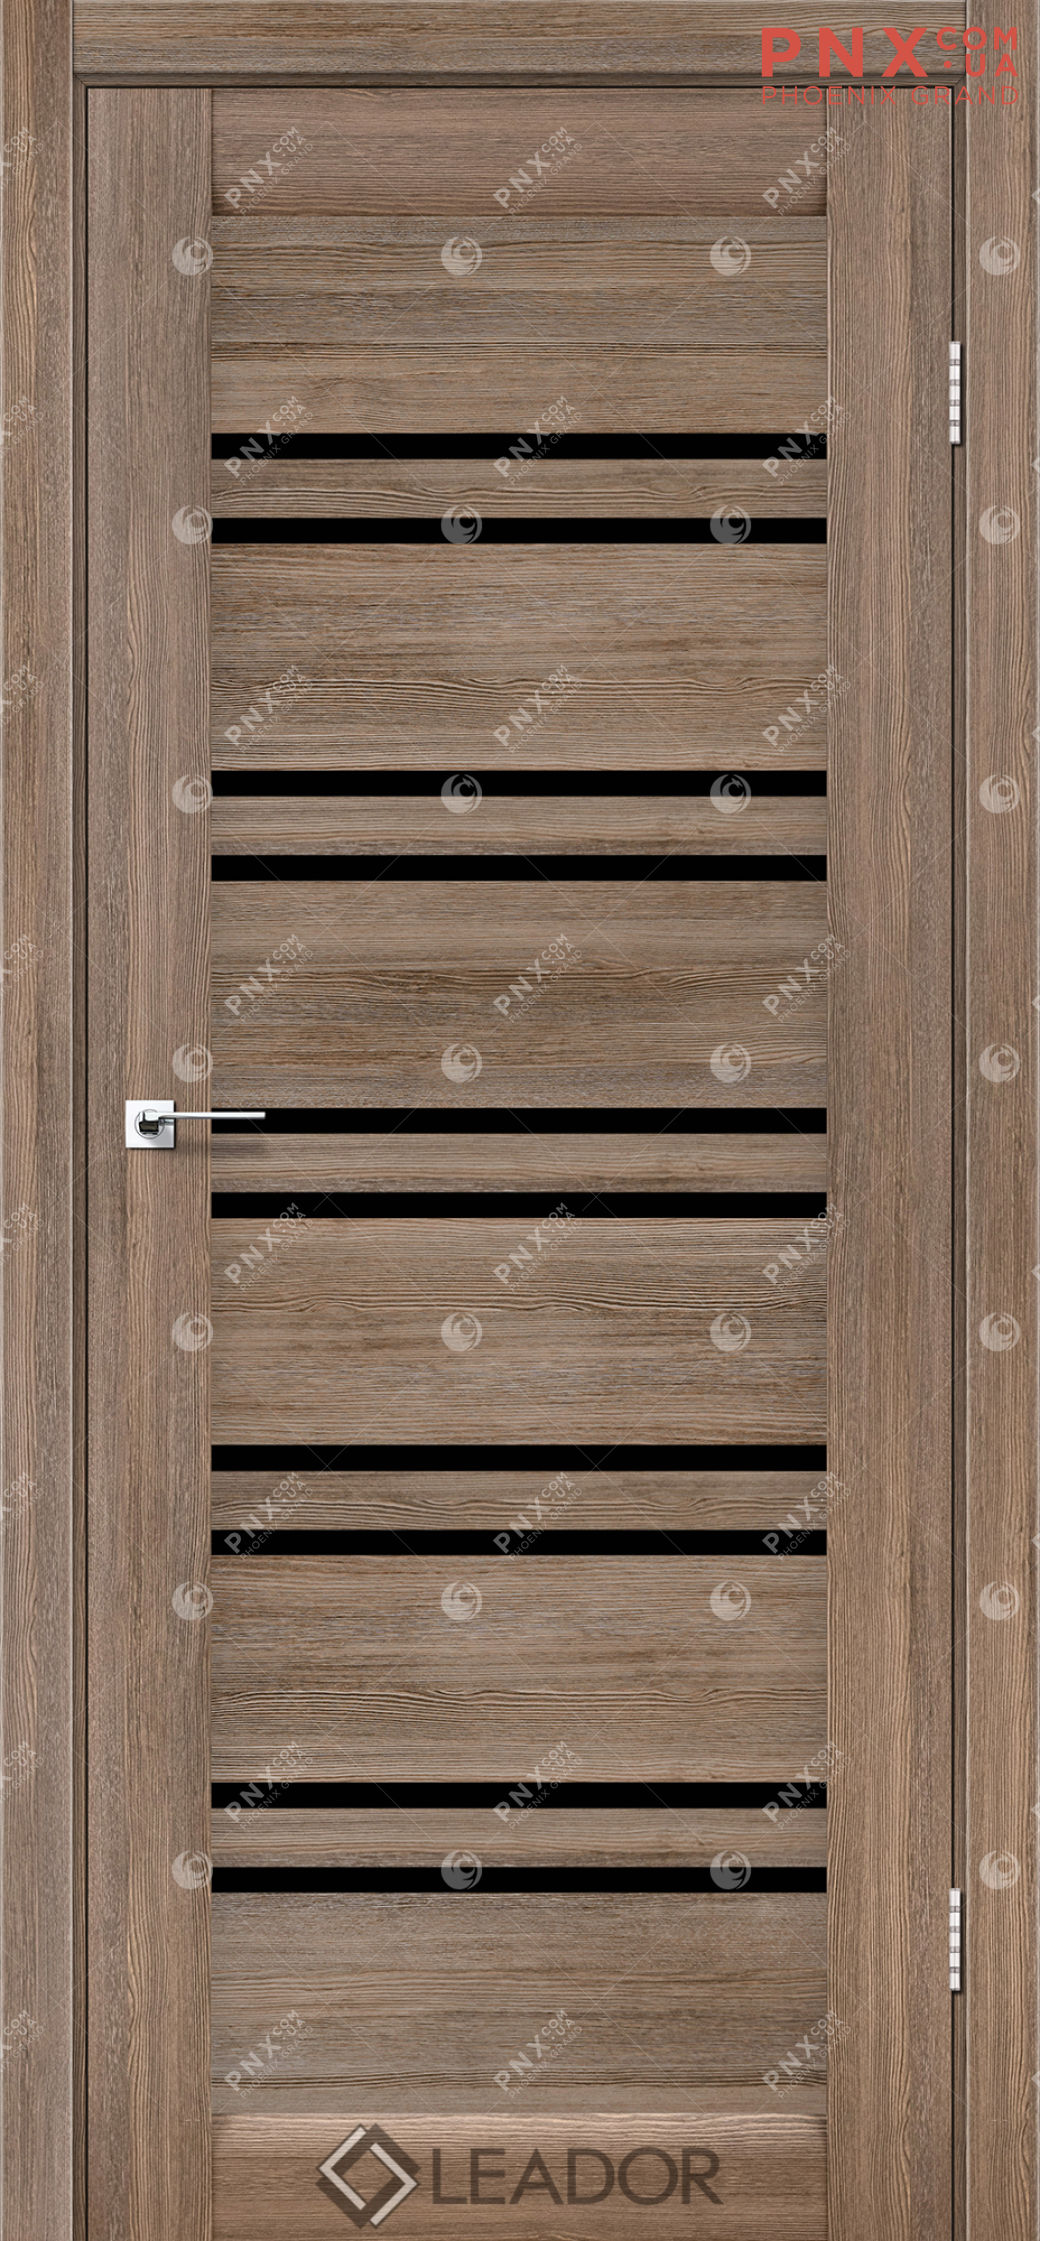 Межкомнатная дверь LEADOR Sicilia, Серое дерево, Черное стекло